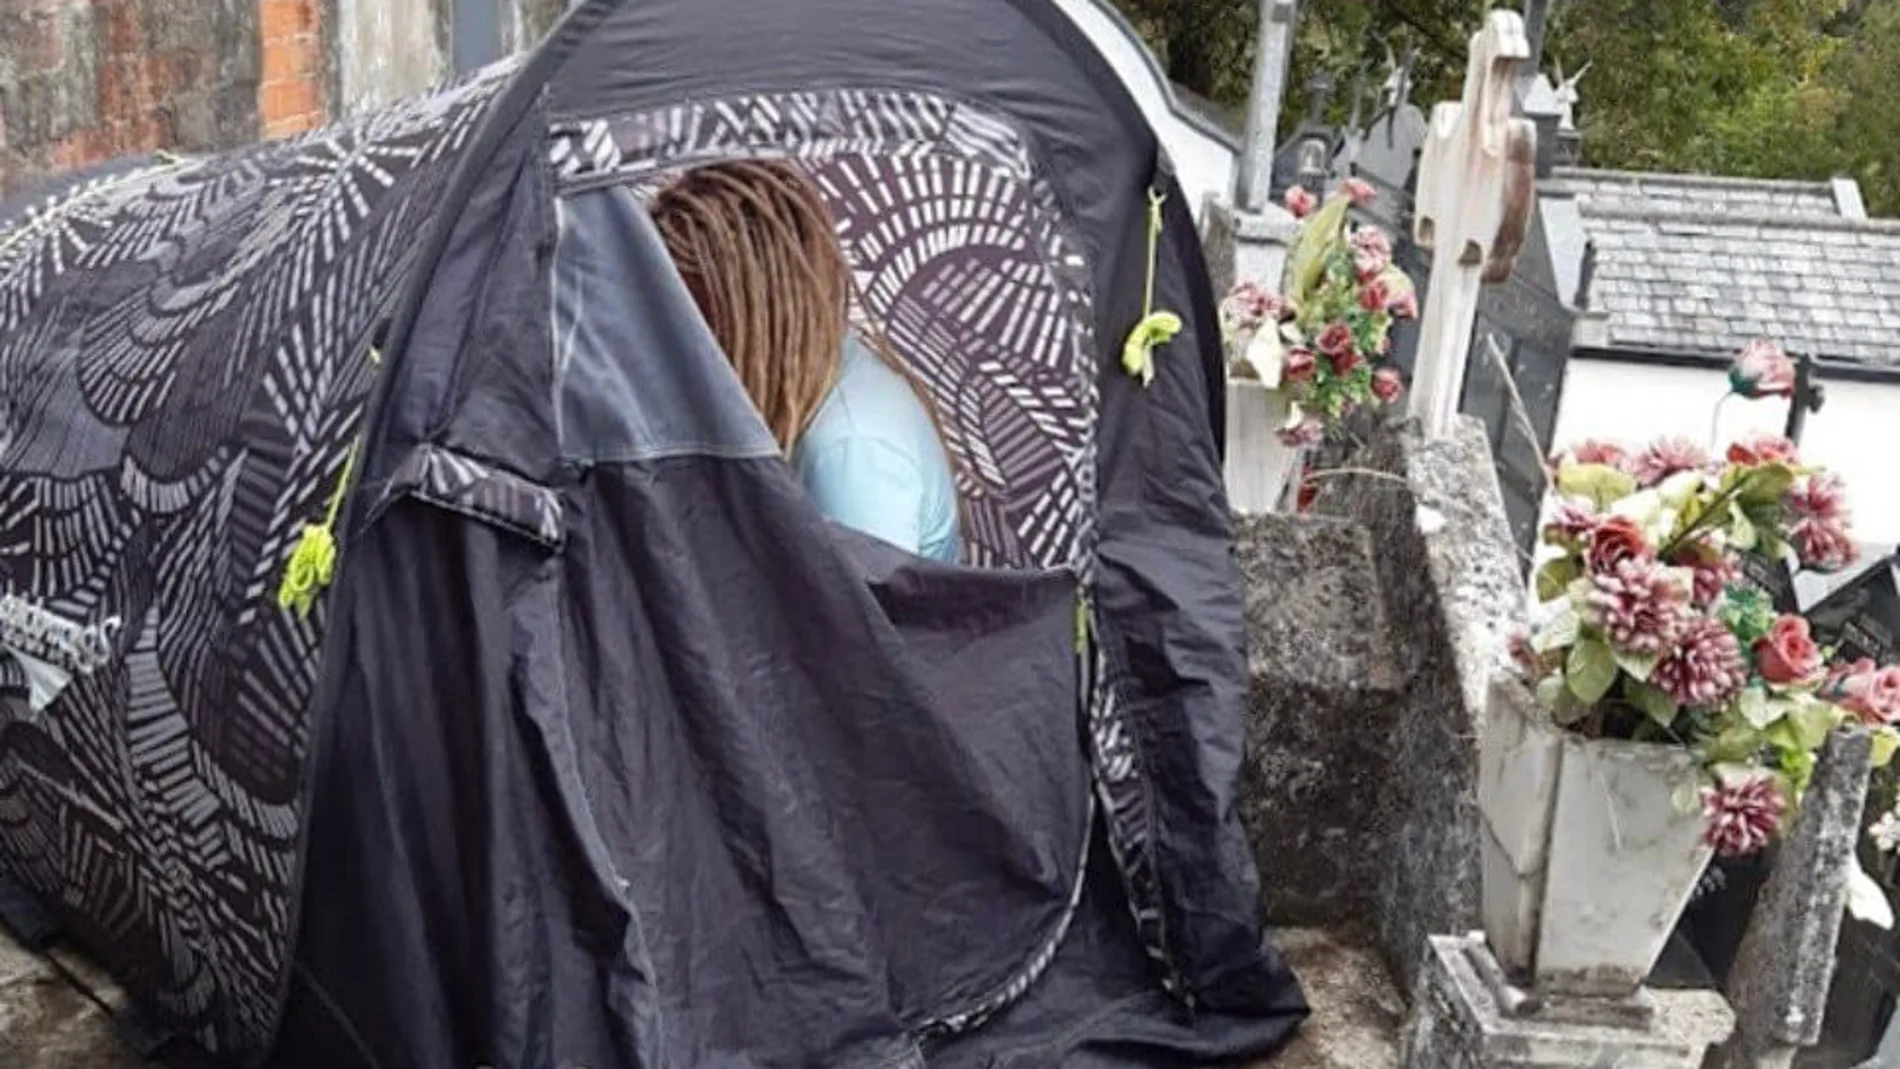 Una peregrina alemana desalojada de un cementerio de Lugo tras acampar en un nicho 